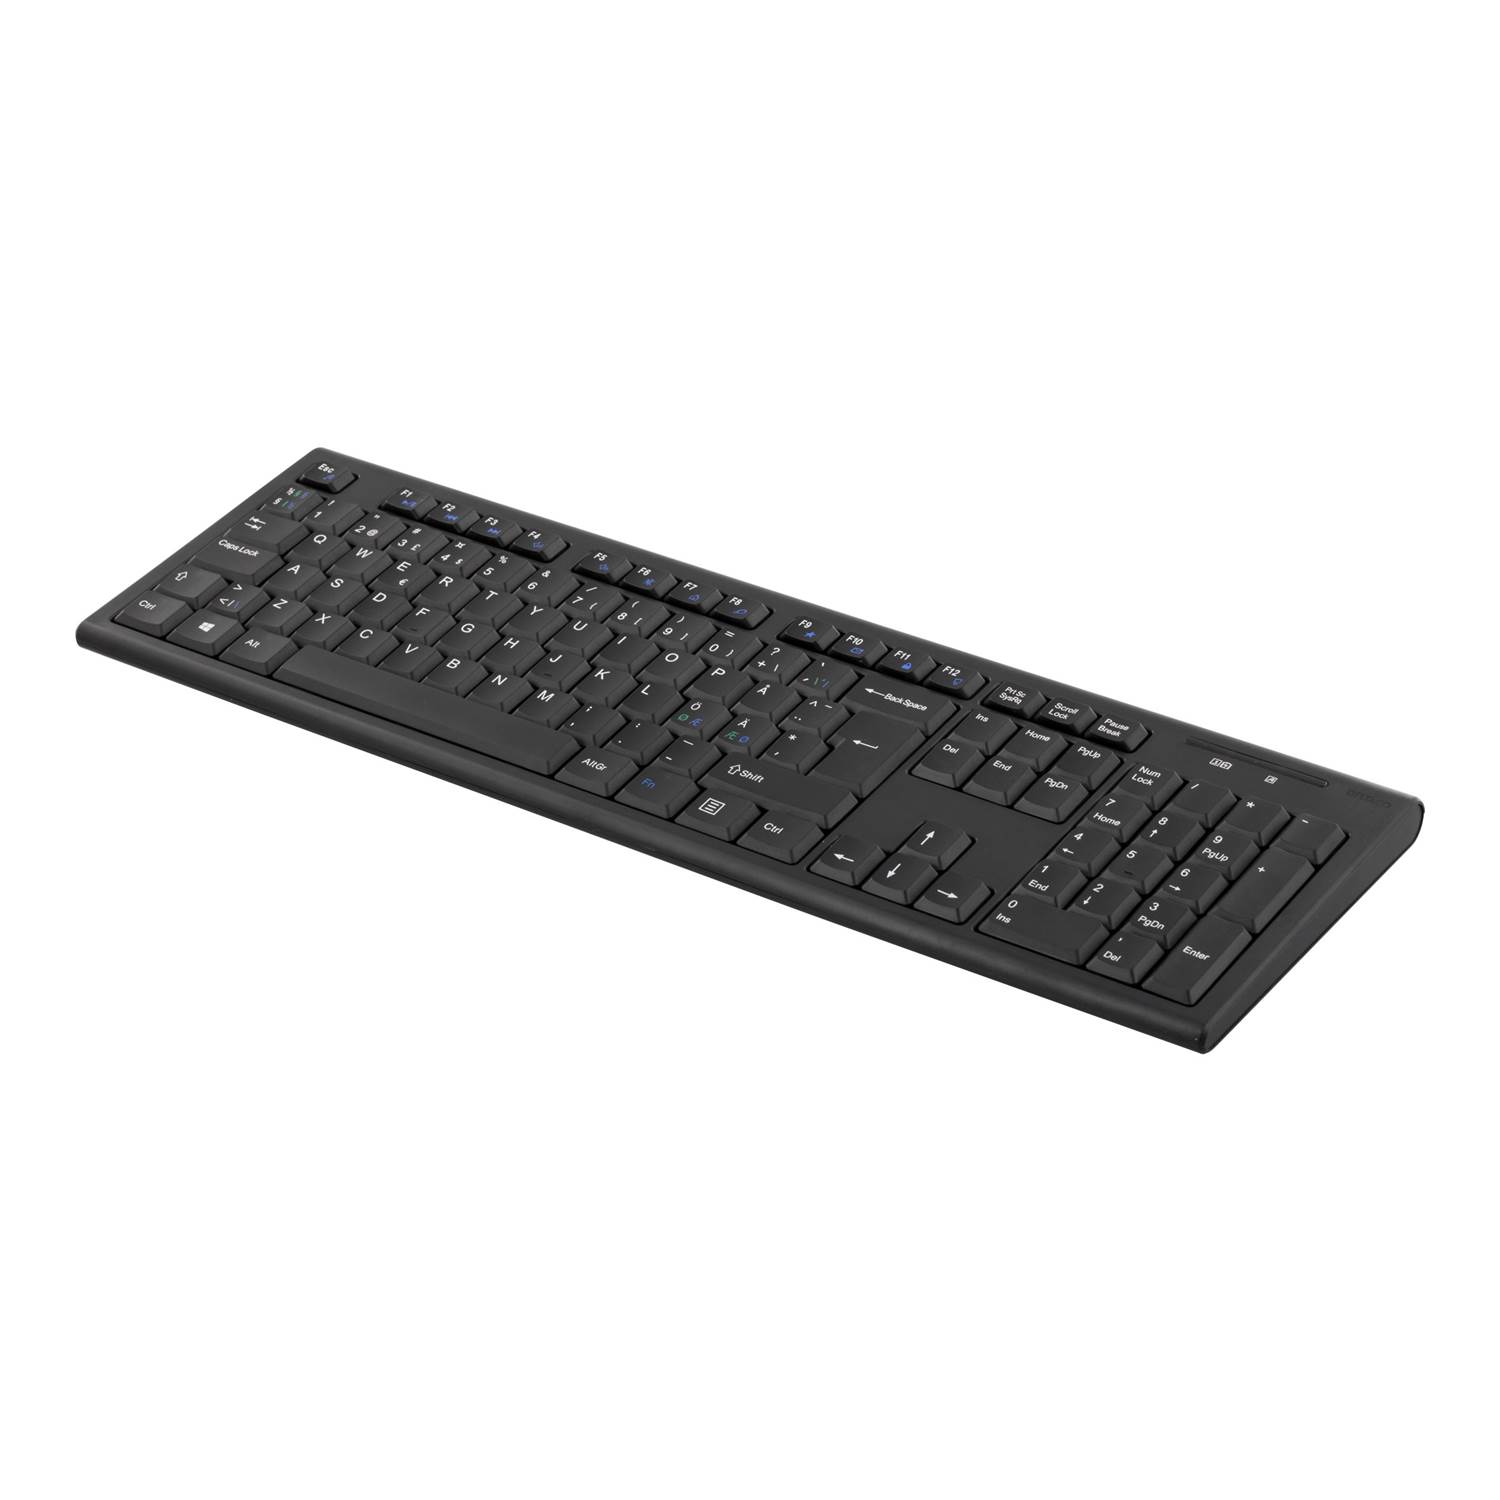 DELTACO trådlöst tangentbord, nordisk layout, USB, 10m, svart